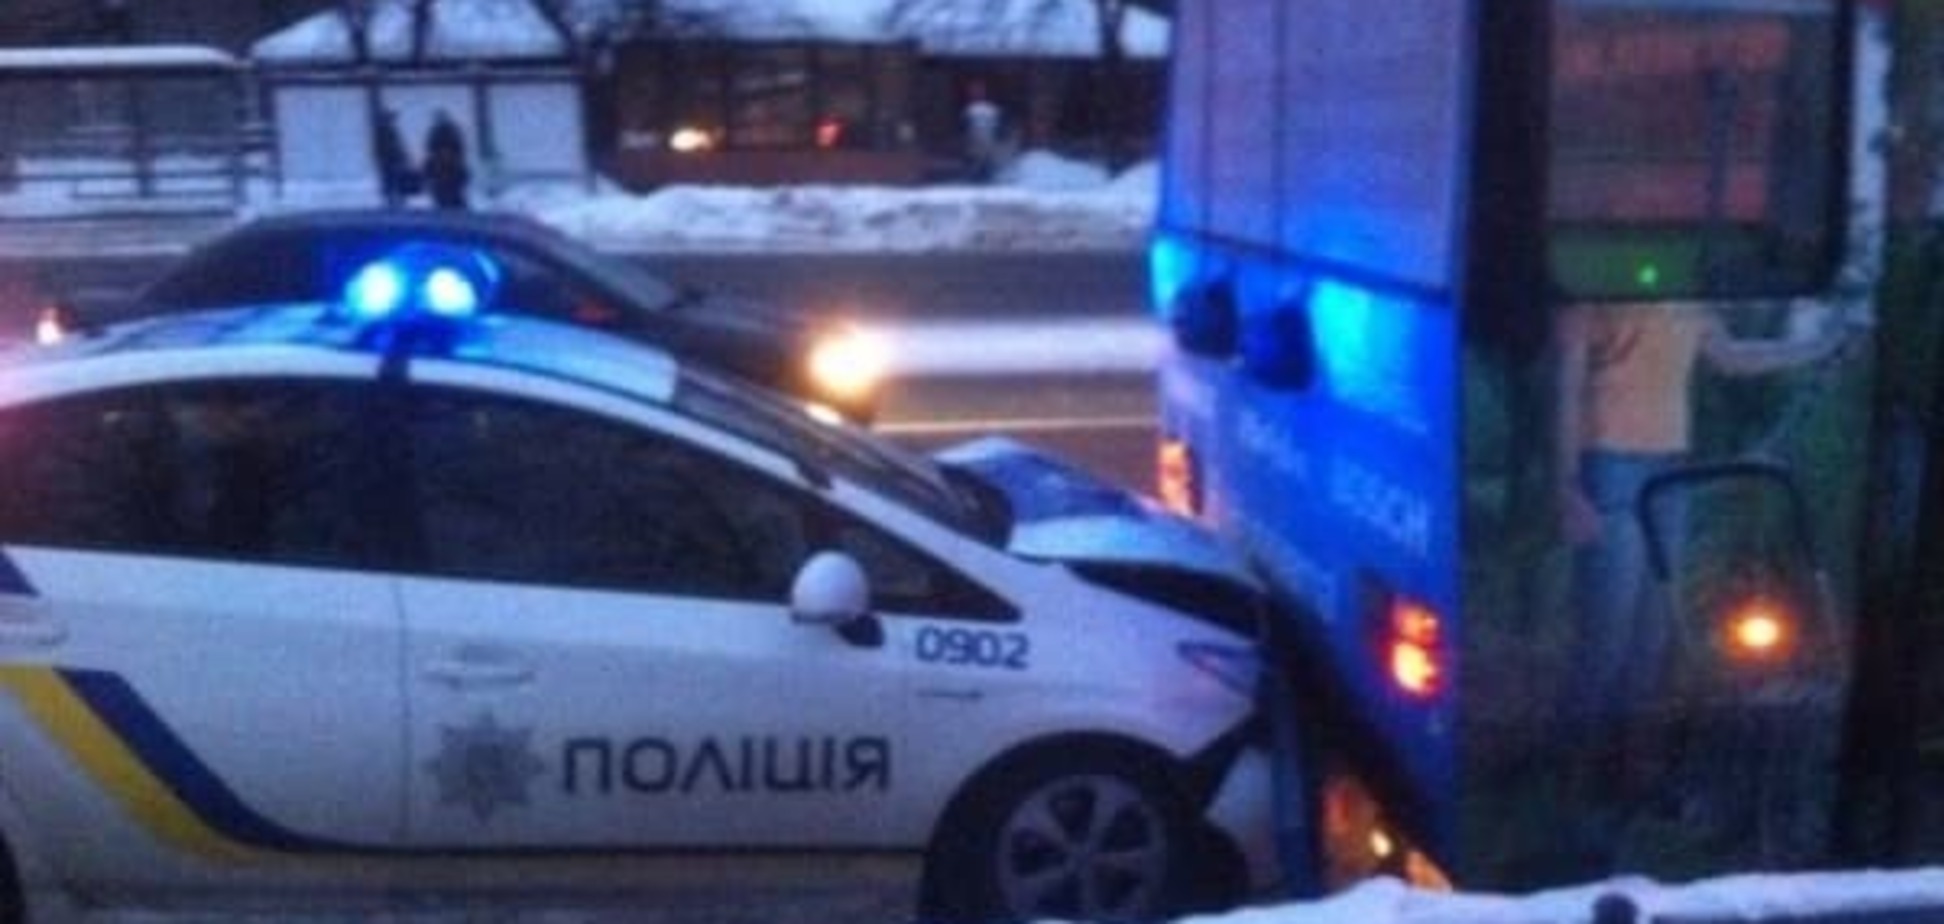 В Харькове автомобиль полиции протаранил троллейбус: фото и видеофакт